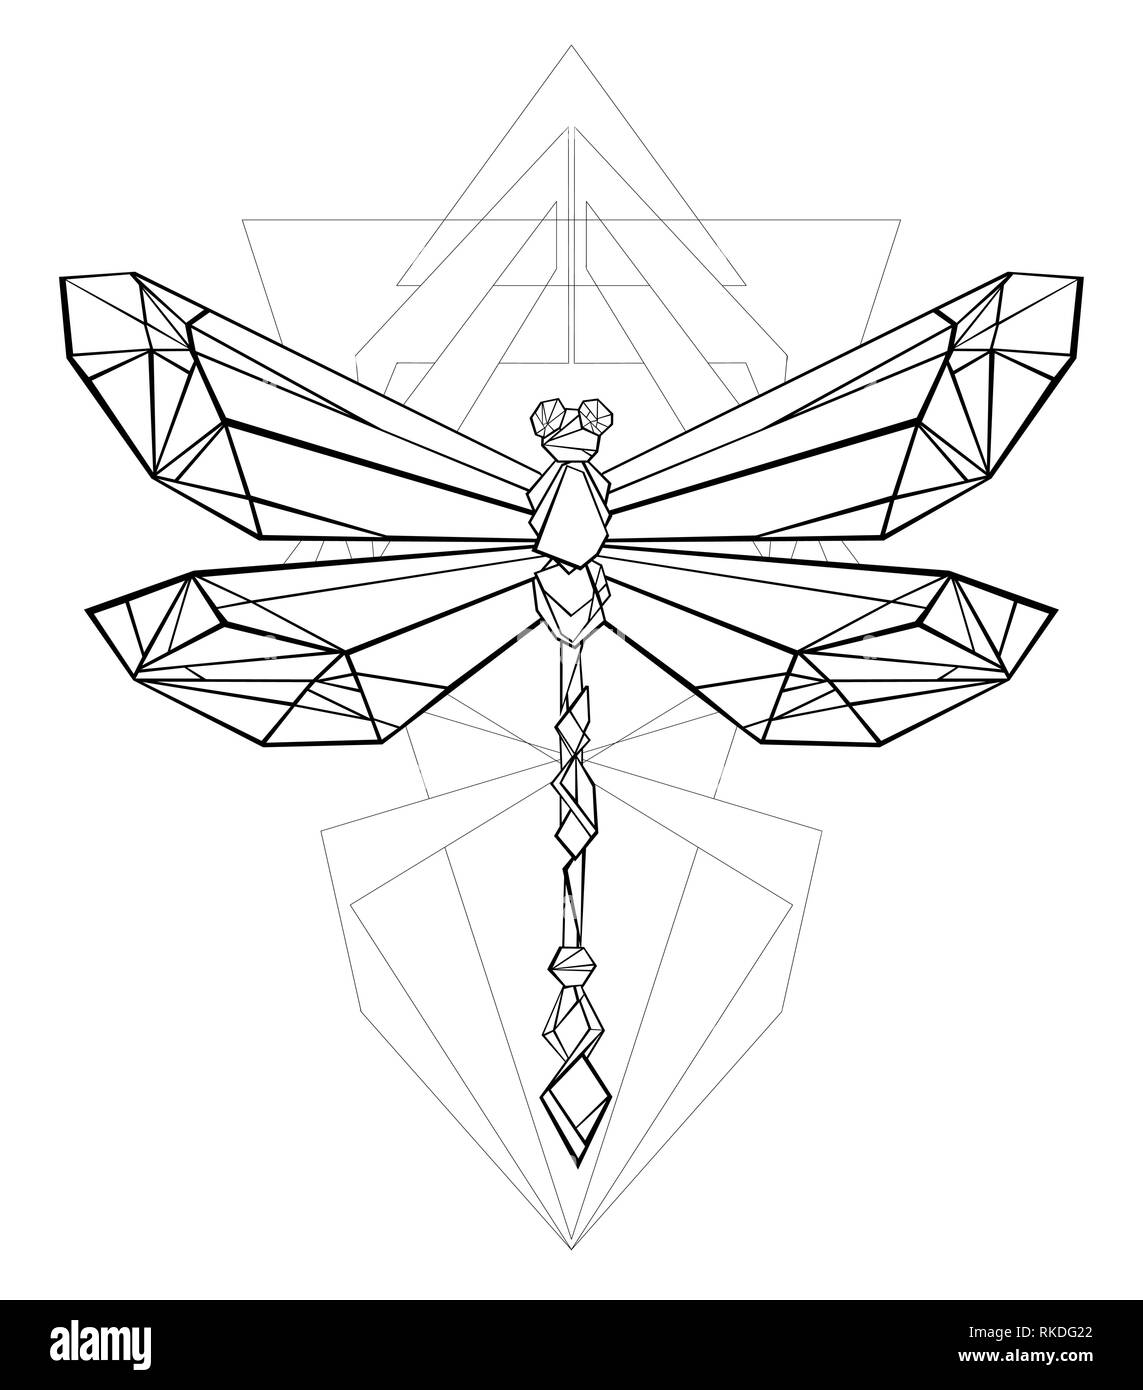 Artisticamente dipinte, nero, contorno, dragonfly poligonale con disegno geometrico su sfondo bianco. Grafica poligonale. Lo stile di tatuaggio. Illustrazione Vettoriale